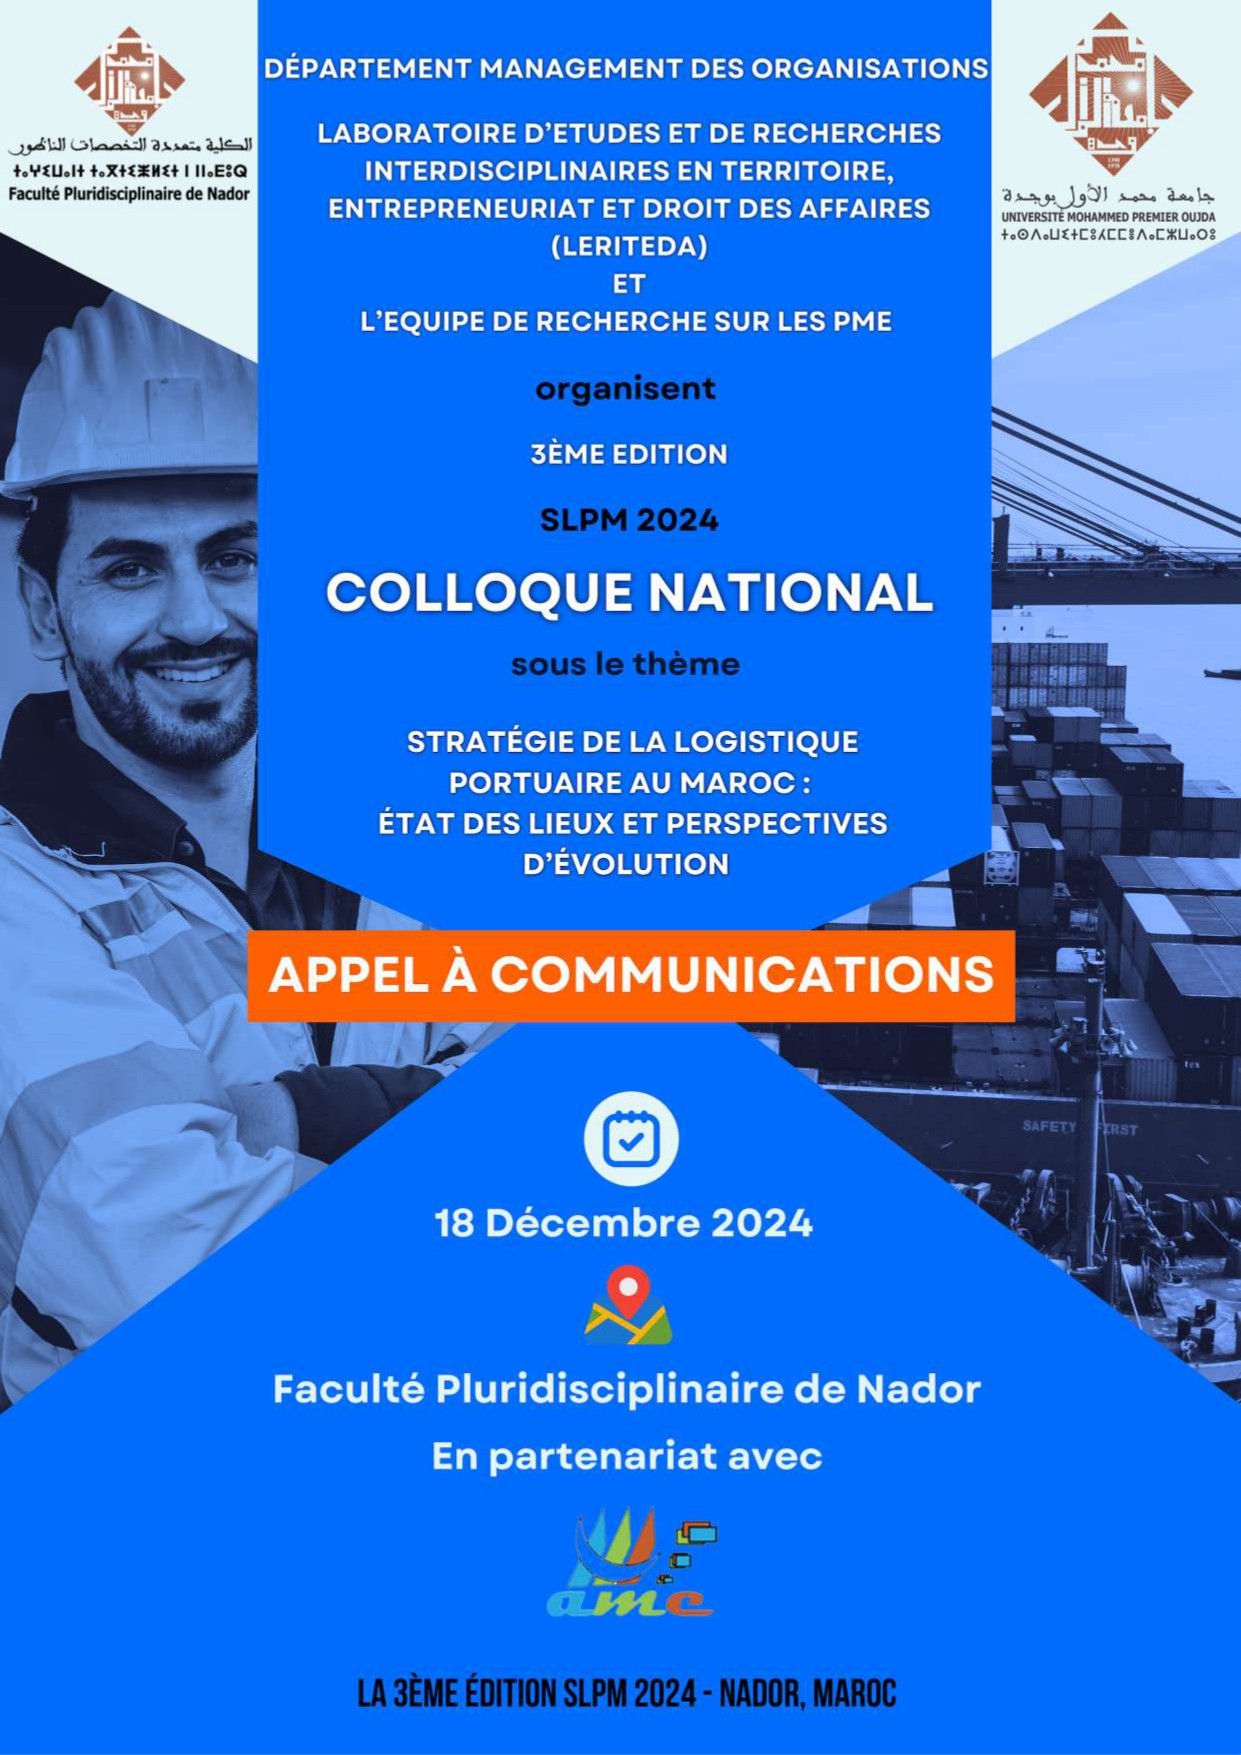 Colloque National sous le thème: Stratégie de la logistique portuaire au maroc: état des lieux et perspectives d’évolution